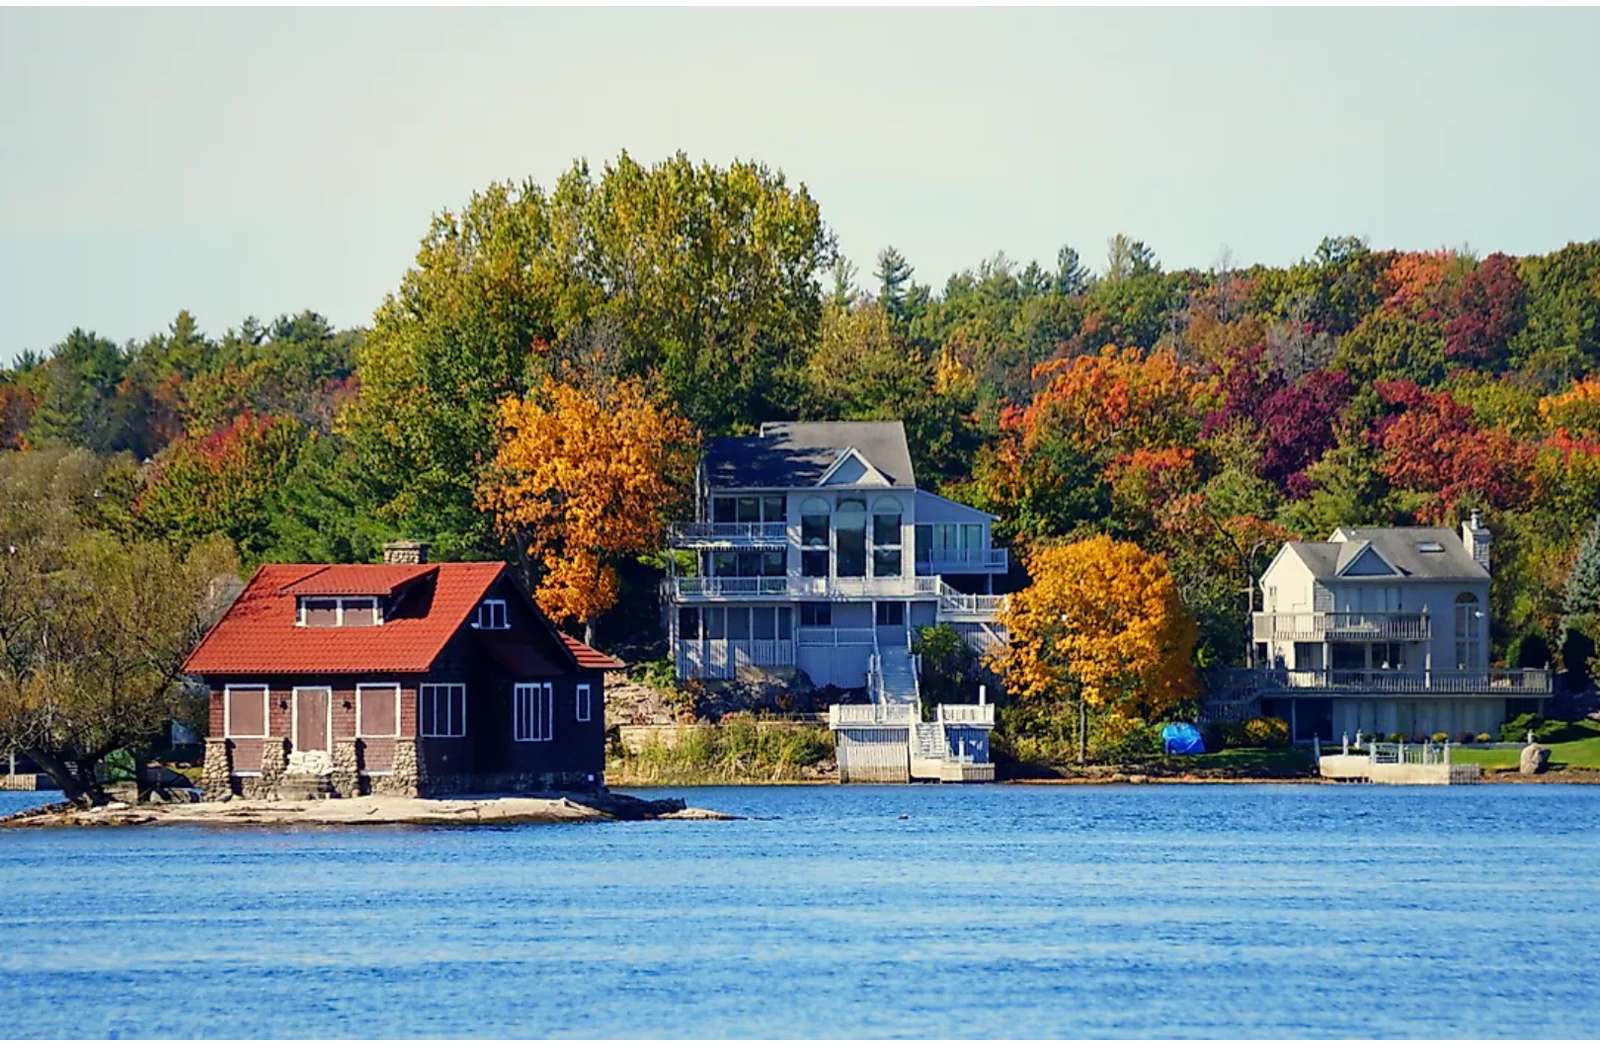 Casas junto al lago en otoño. rompecabezas en línea